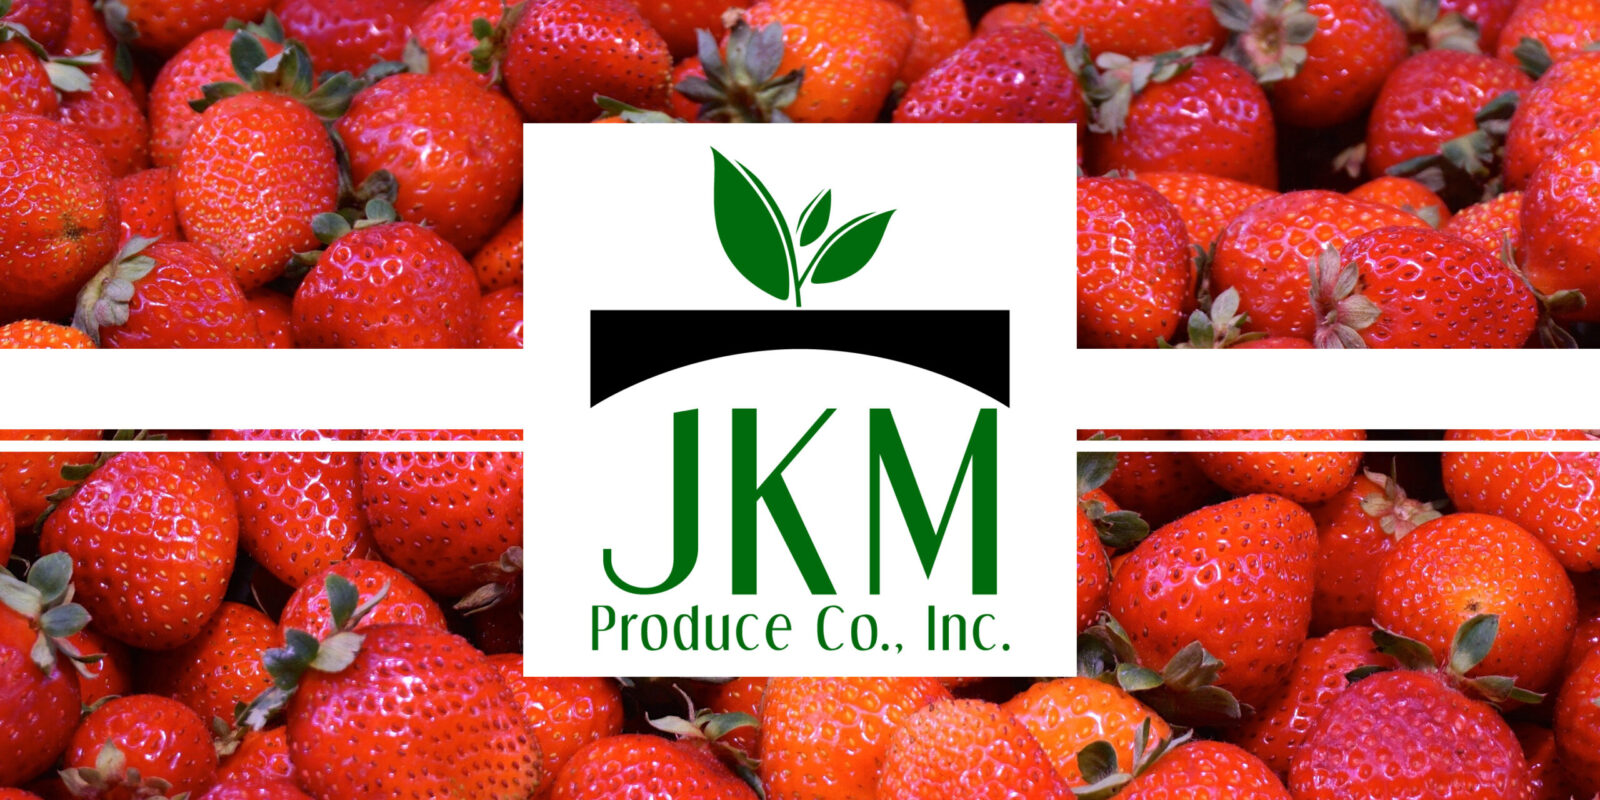 JKM Produce